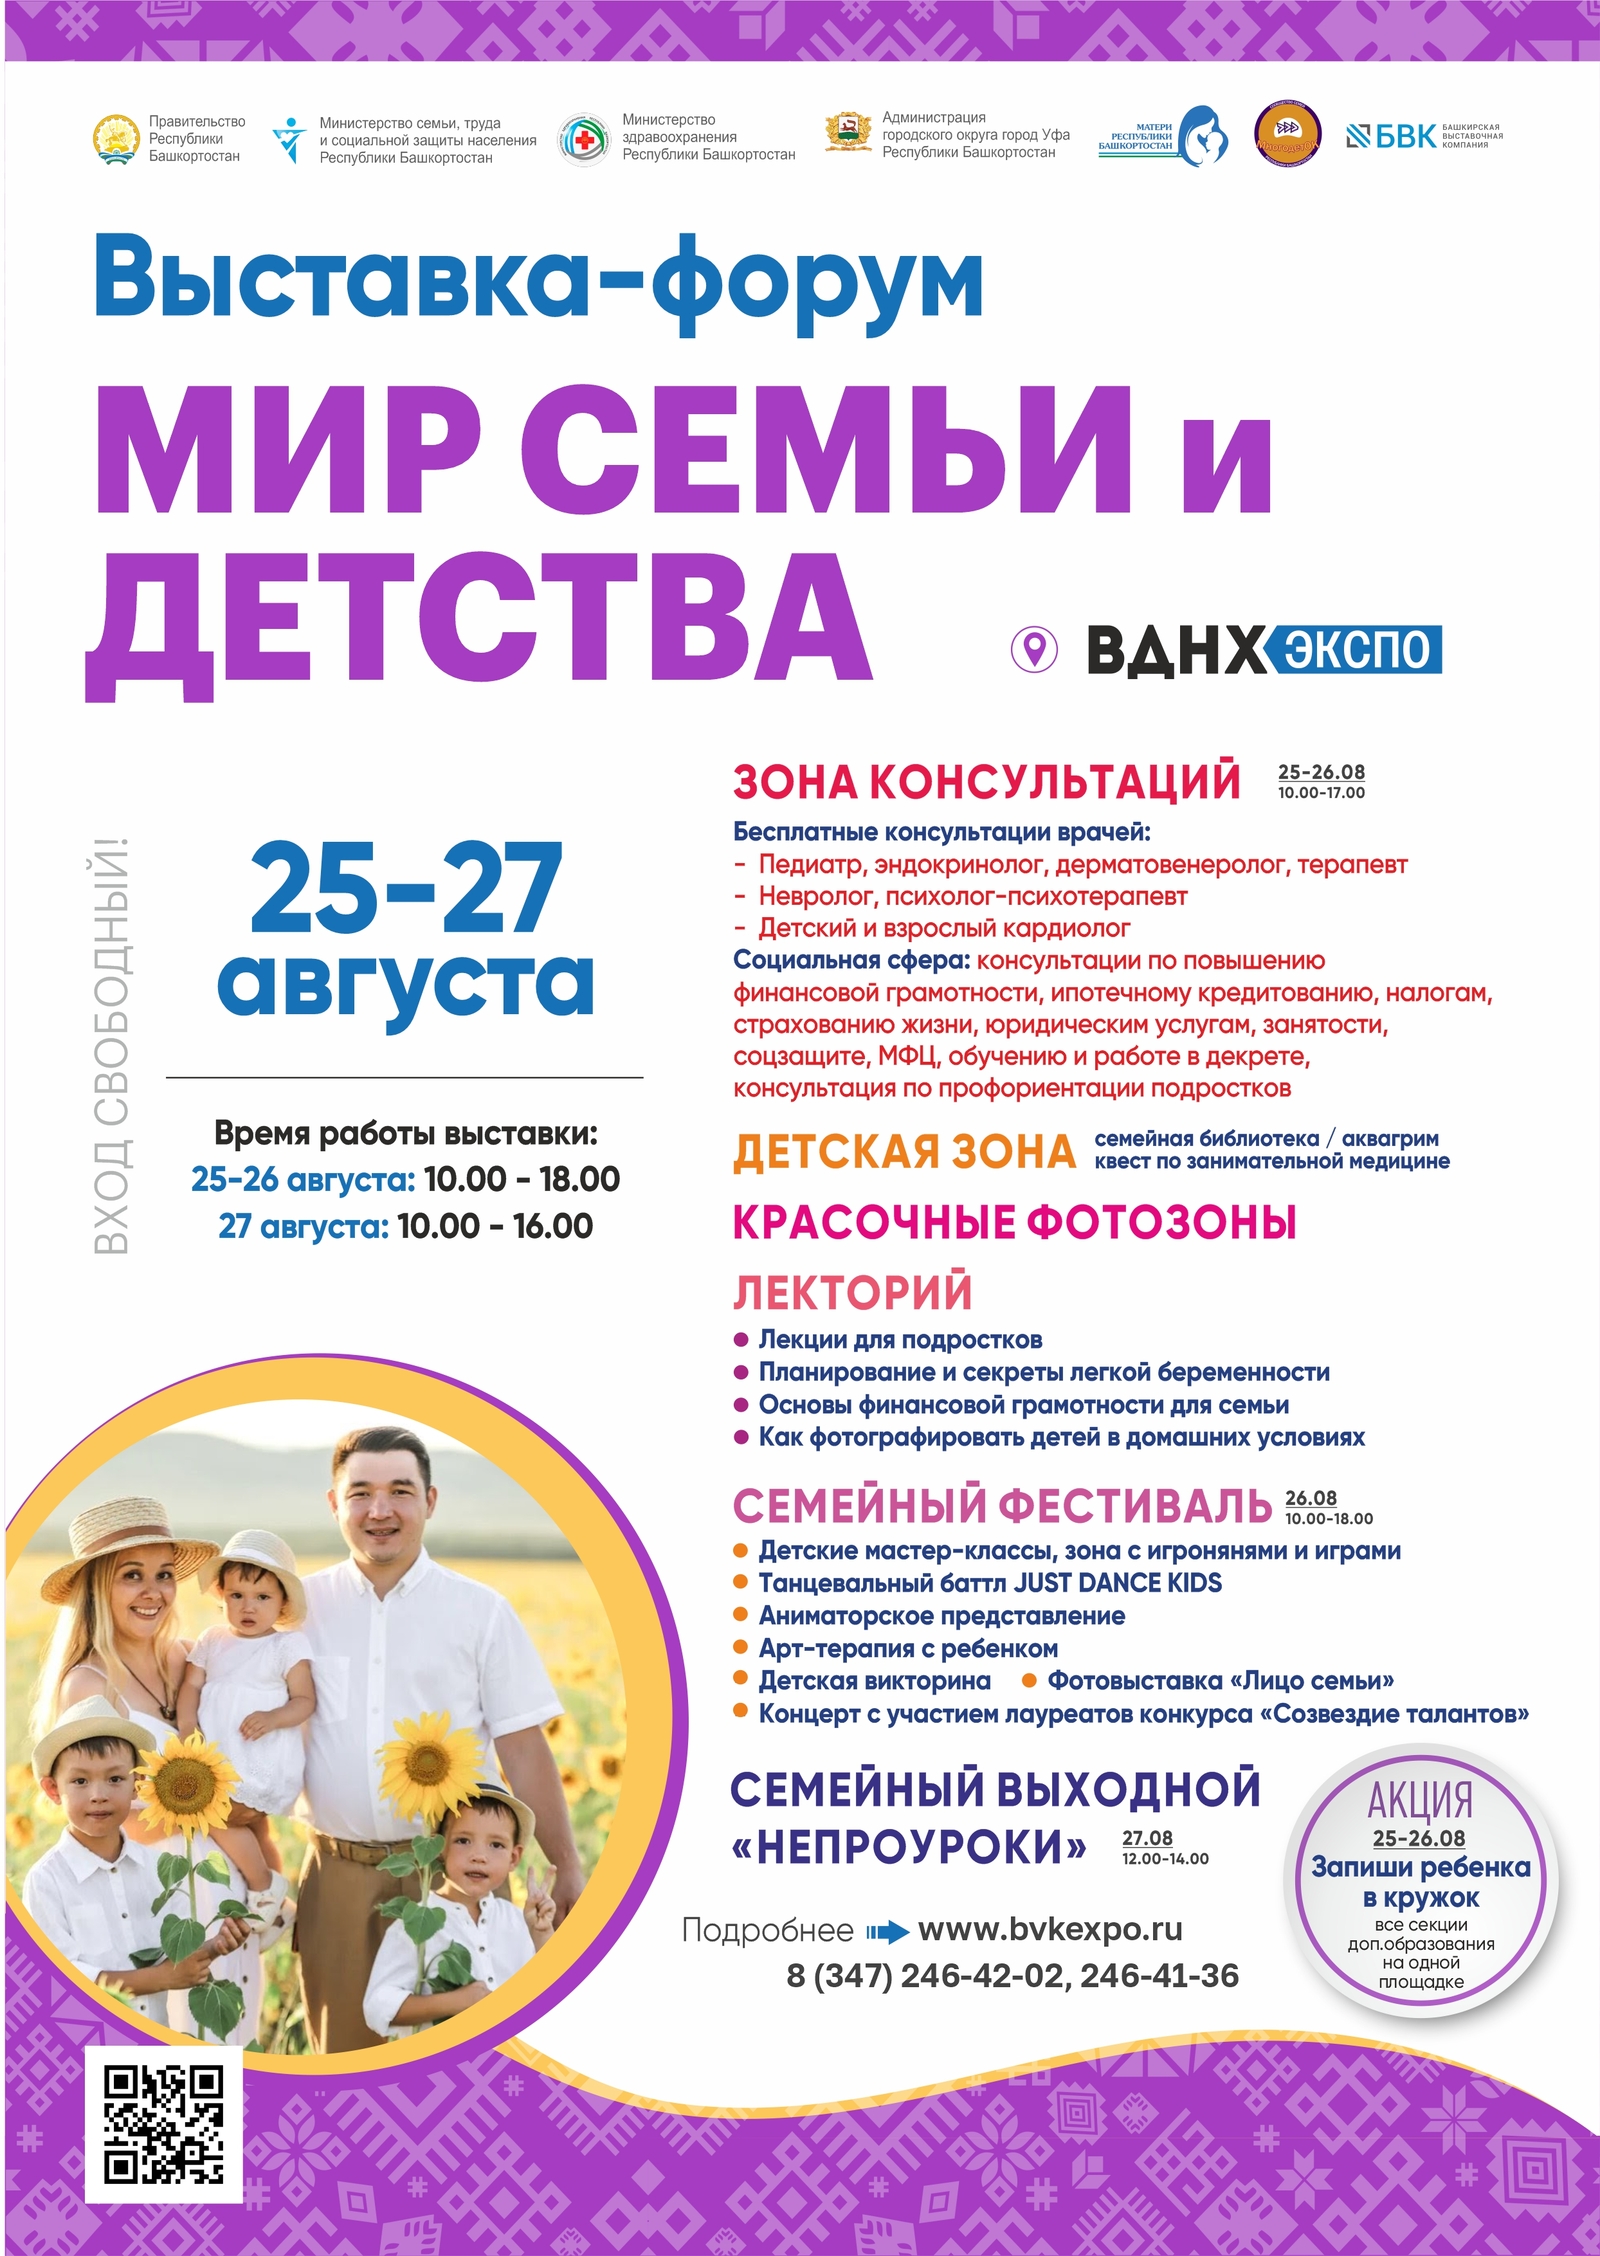 В столице Башкирии пройдёт выставка-форум «Мир семьи и детства»